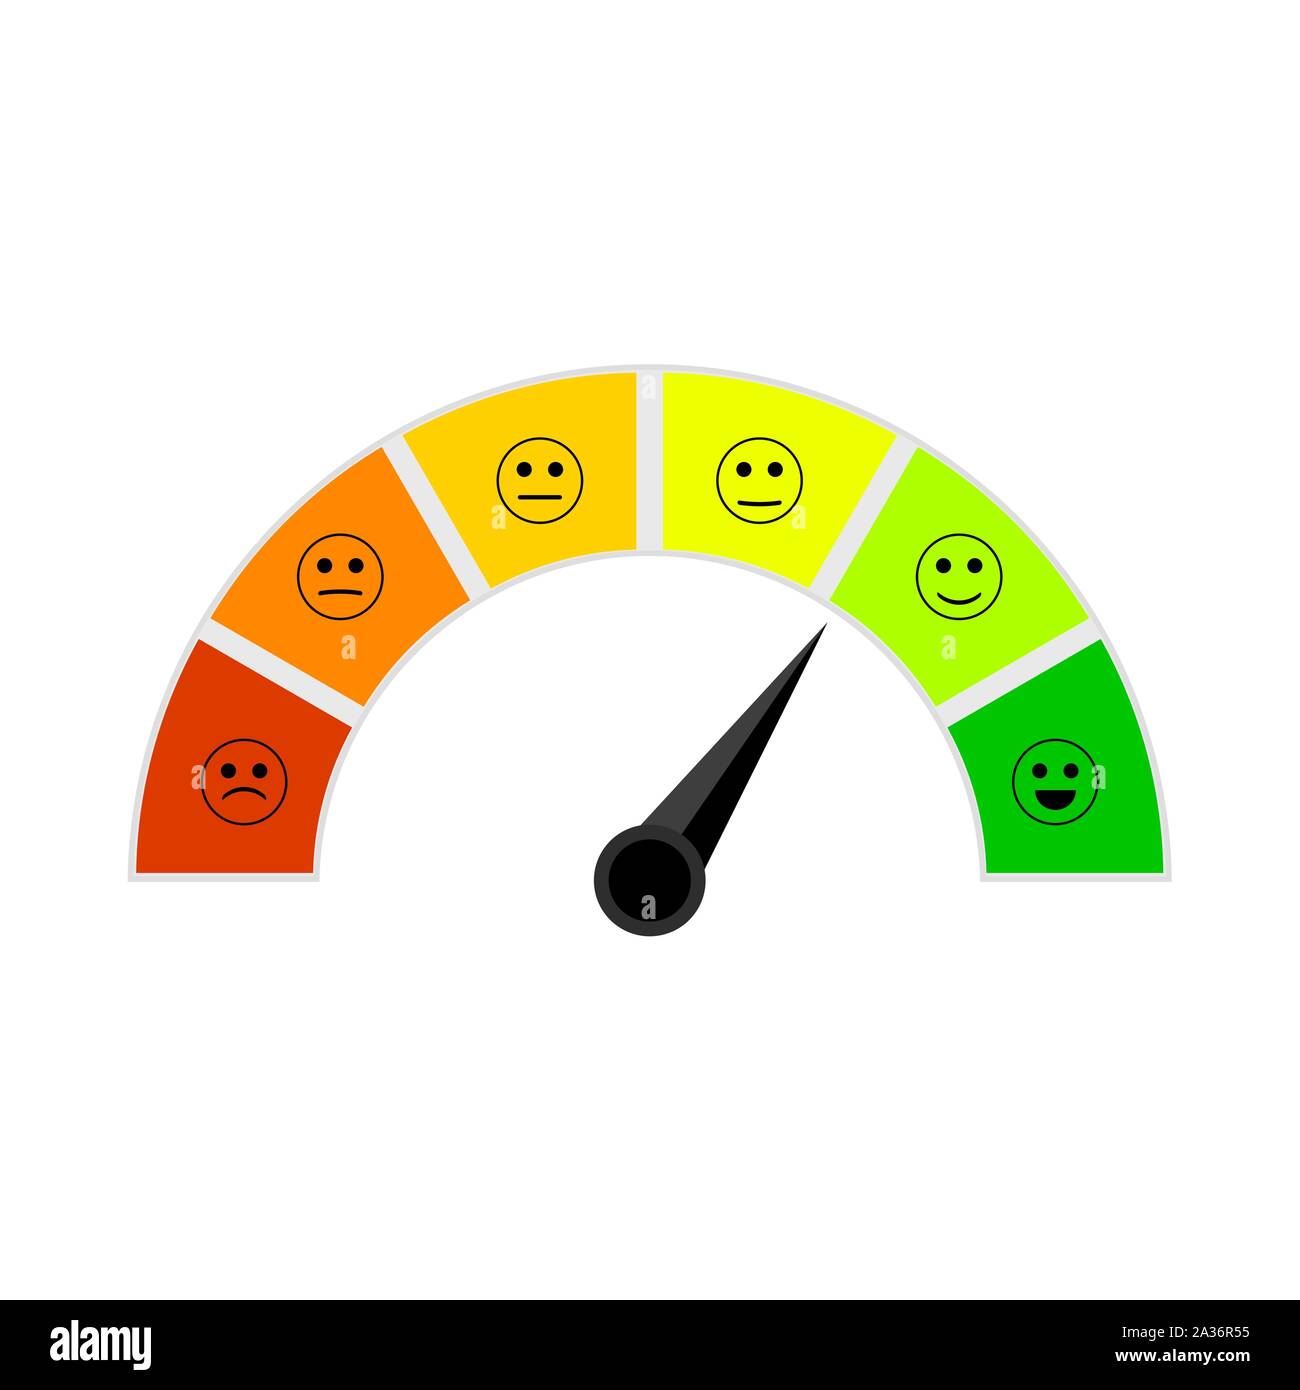 Credit Score Indikator mit farbigen Segmenten. Vektor m Bewertung Indikator, der Pfeil auf ausgezeichnete, Angabe Credit report Abbildung Stock Vektor